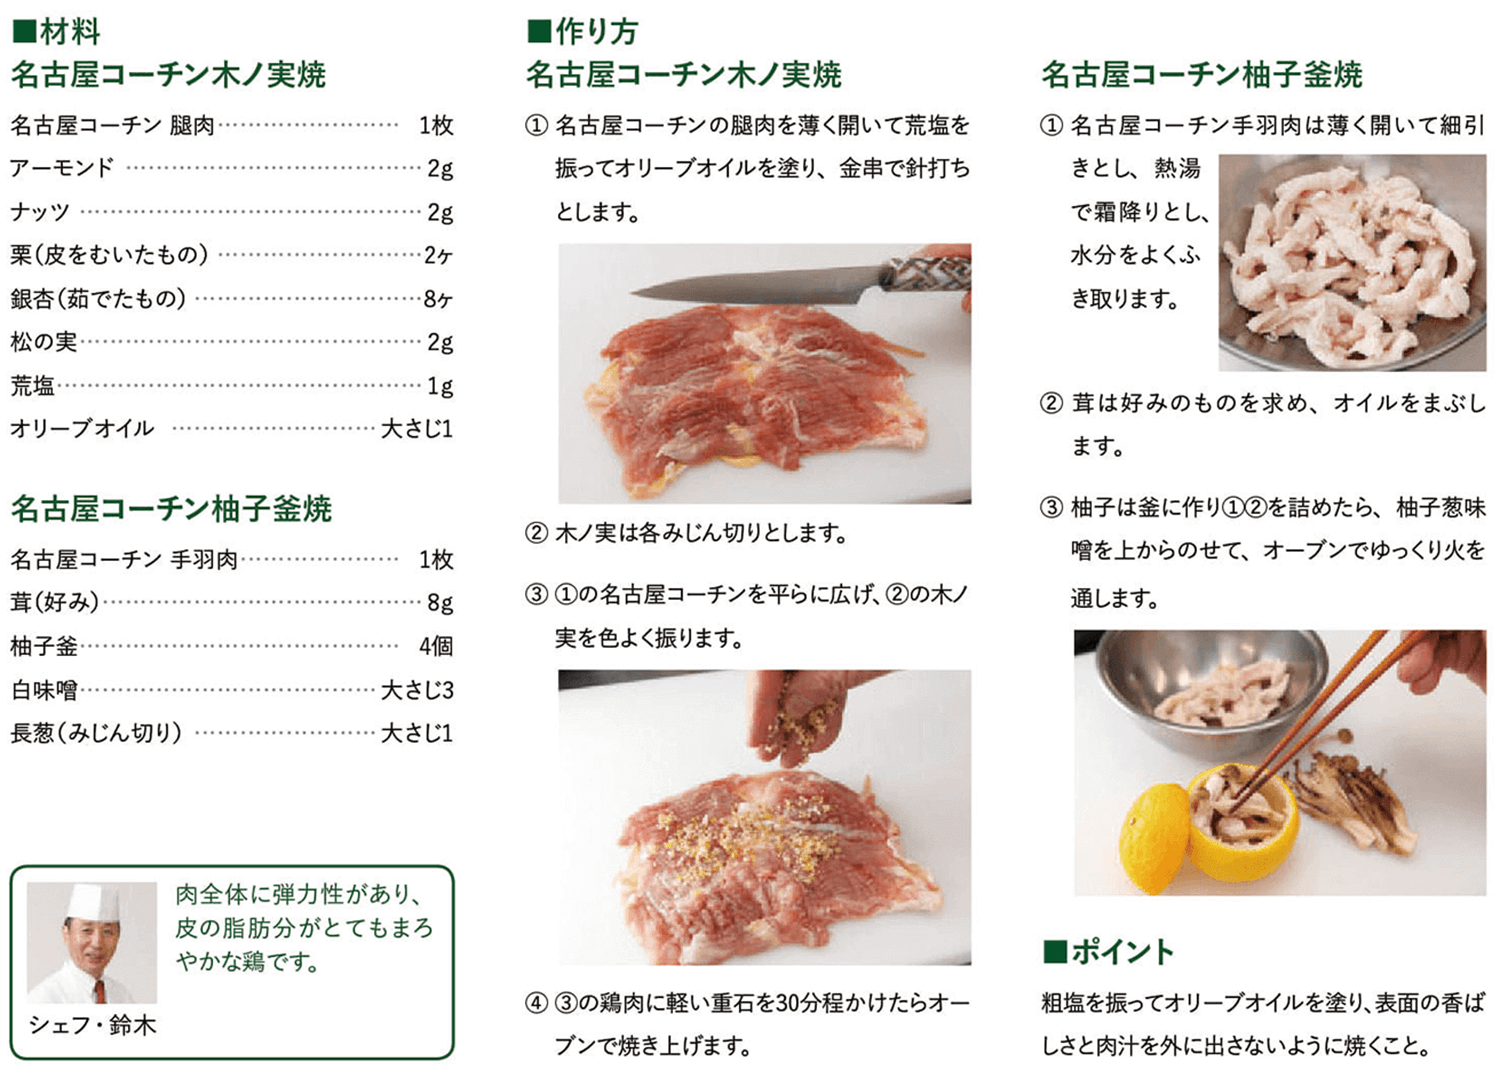 名古屋コーチン木ノ実焼、柚子釜焼（和食） レシピ